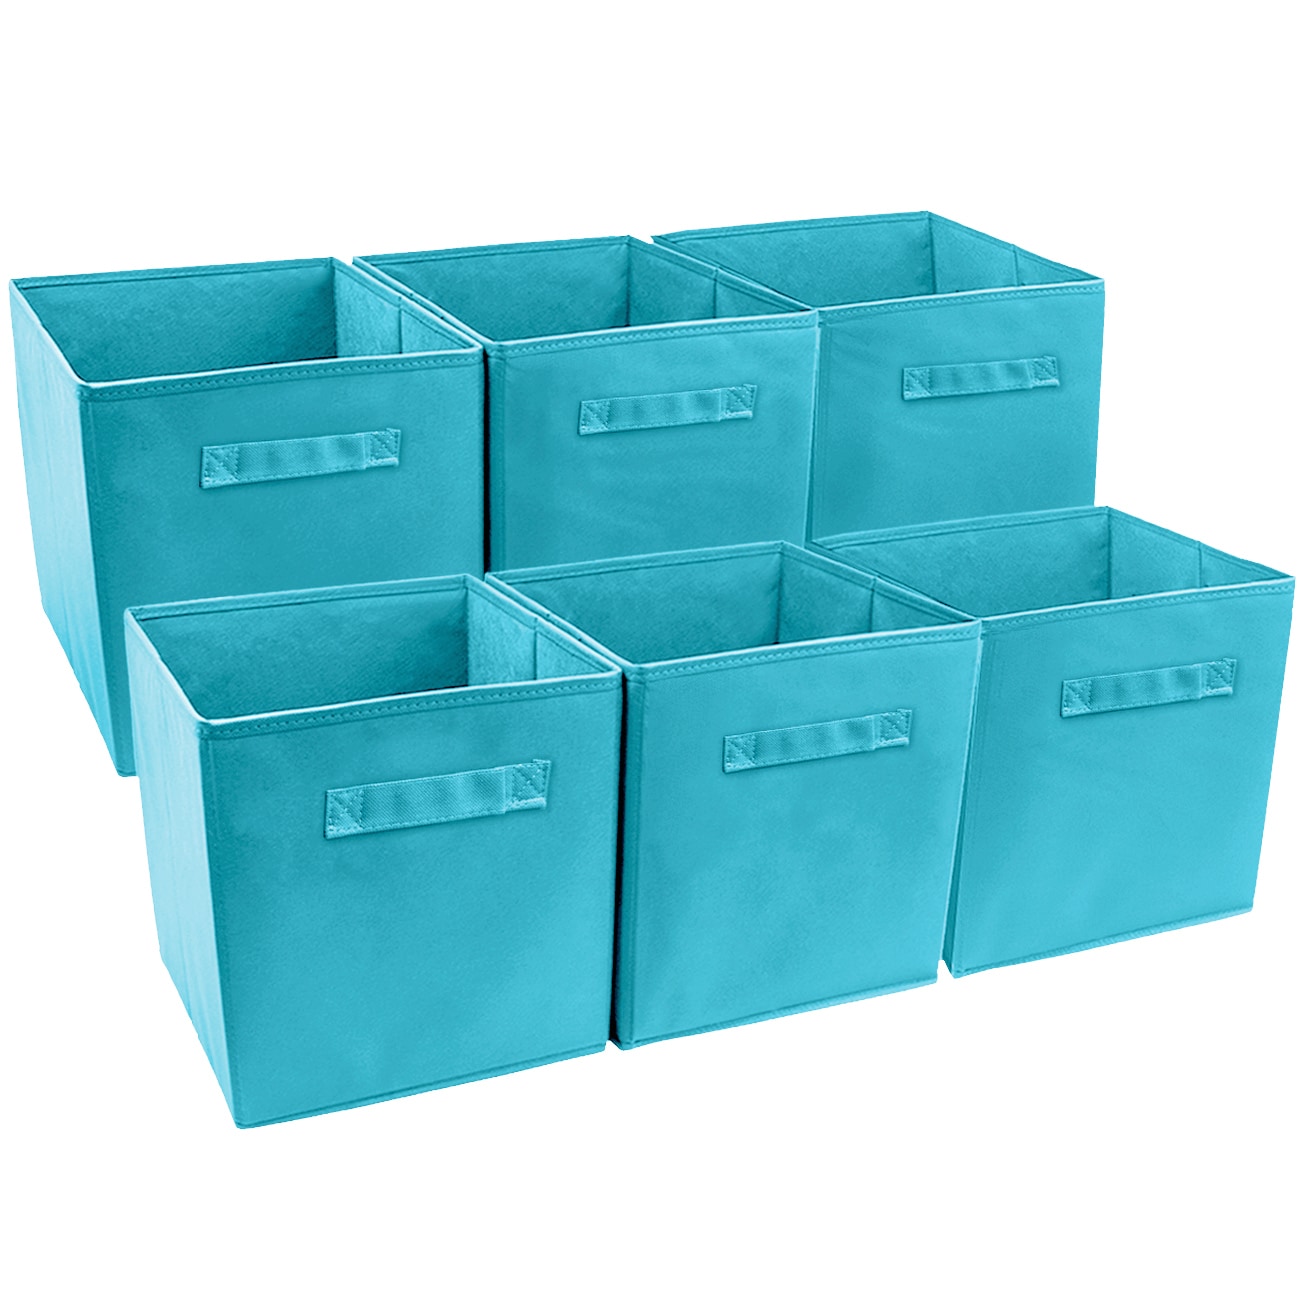 OrganizeMe 2-Pack Large Corner Collapsible Pop Up Storage Bins - Pattern/Print